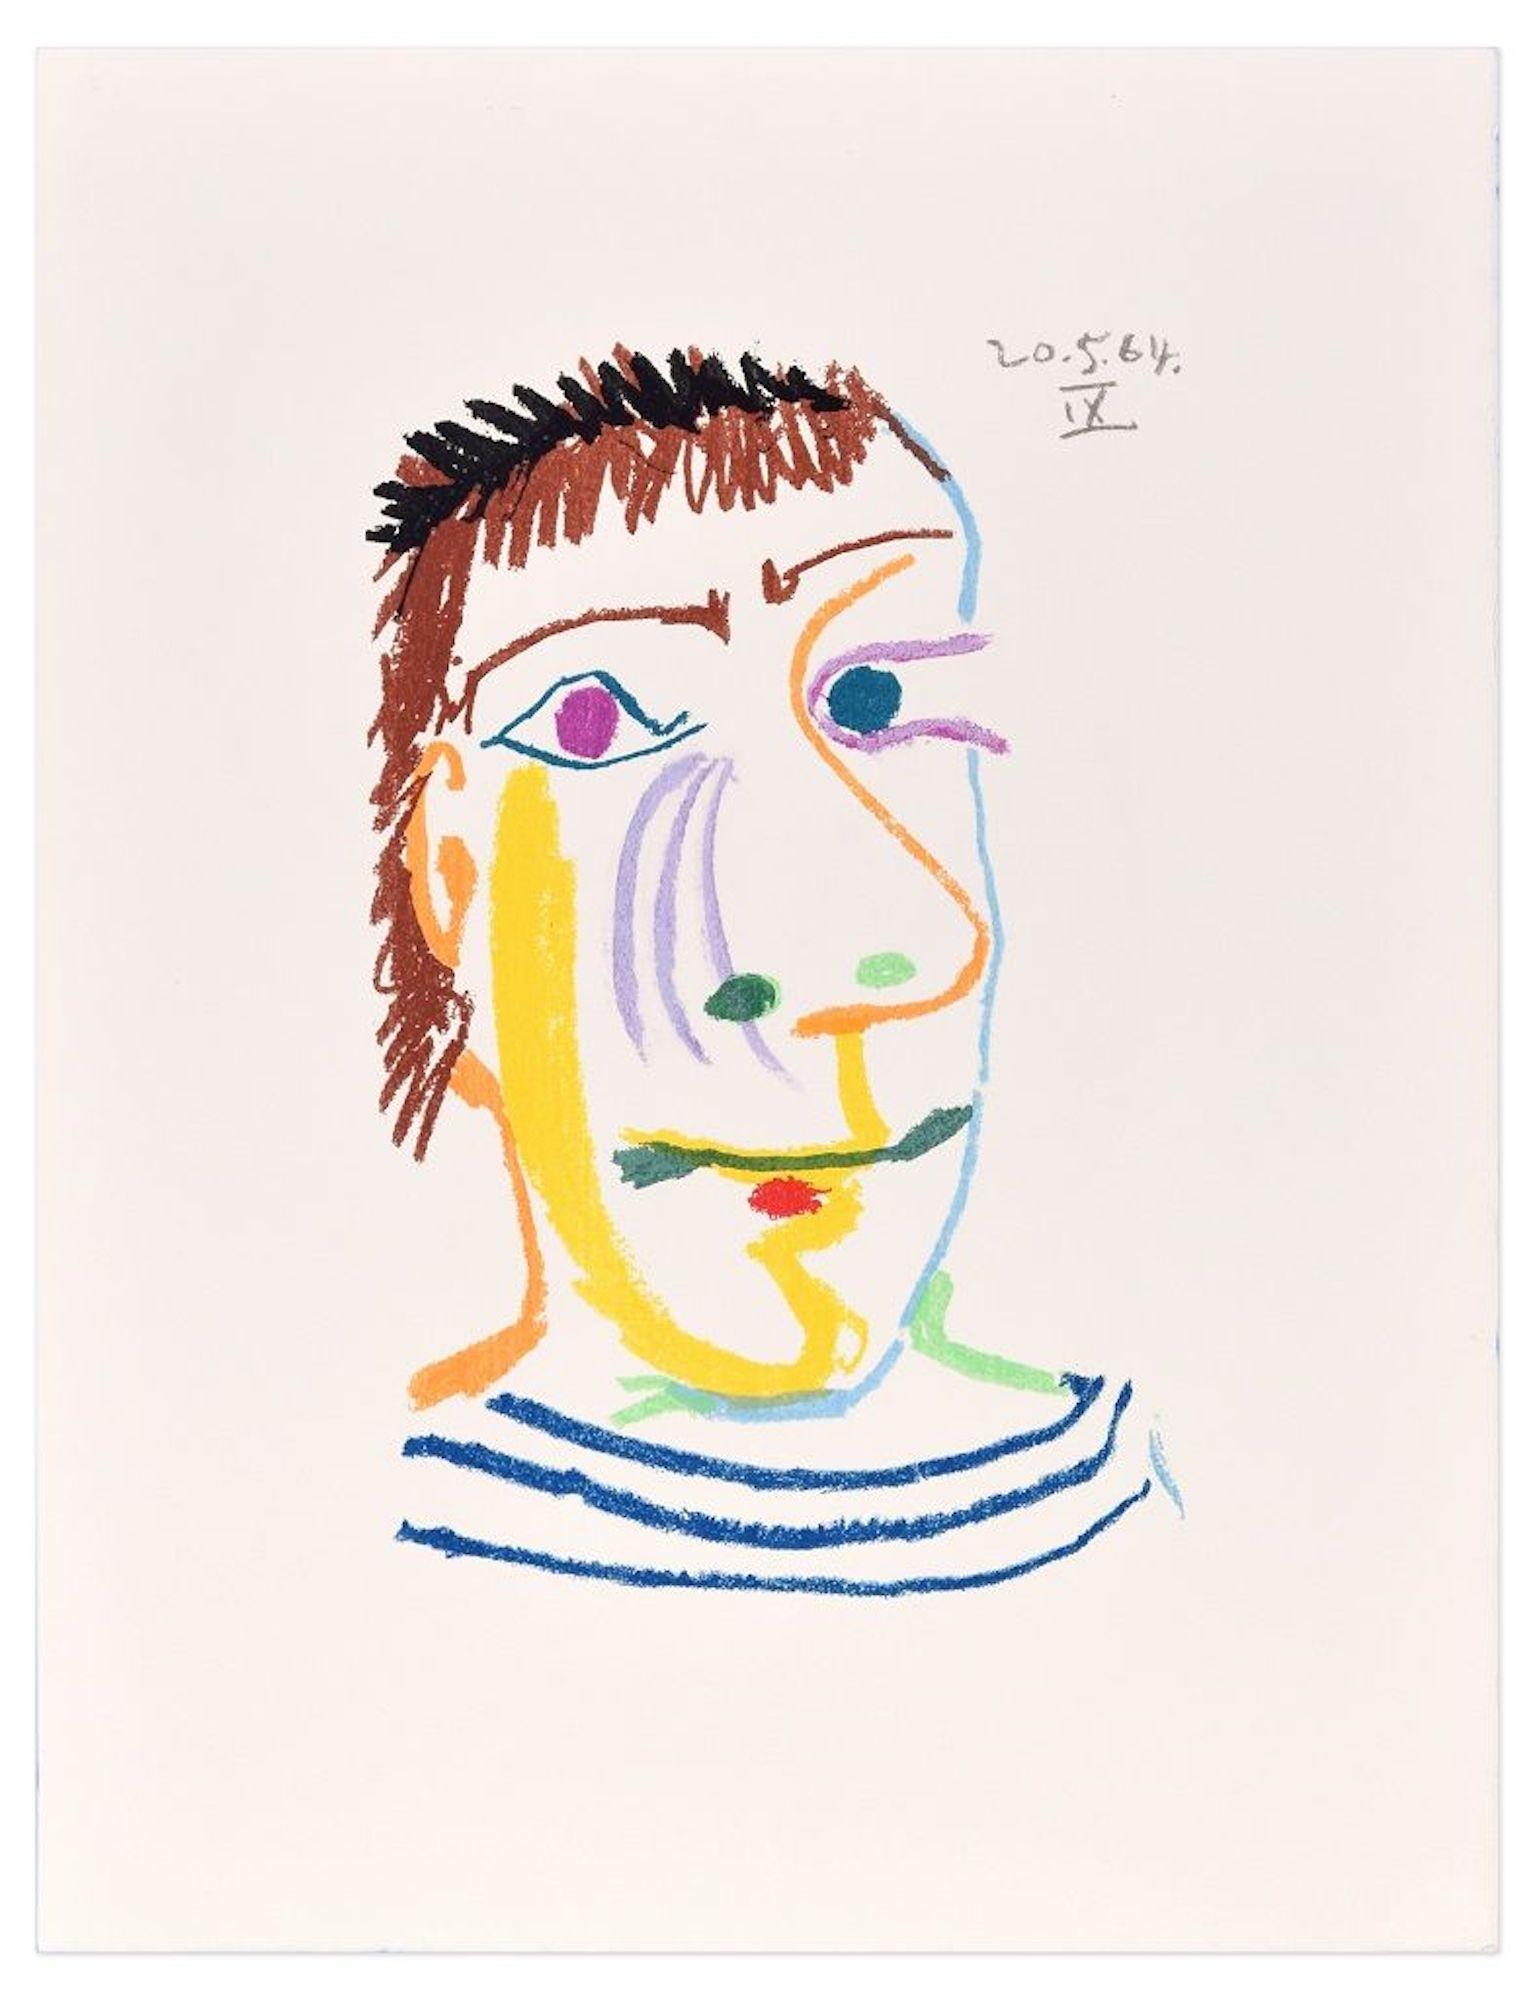 (after) Pablo Picasso Print – Le Goût du Bonheur - 20.5.64 IX - Lithographie nach P. Picasso